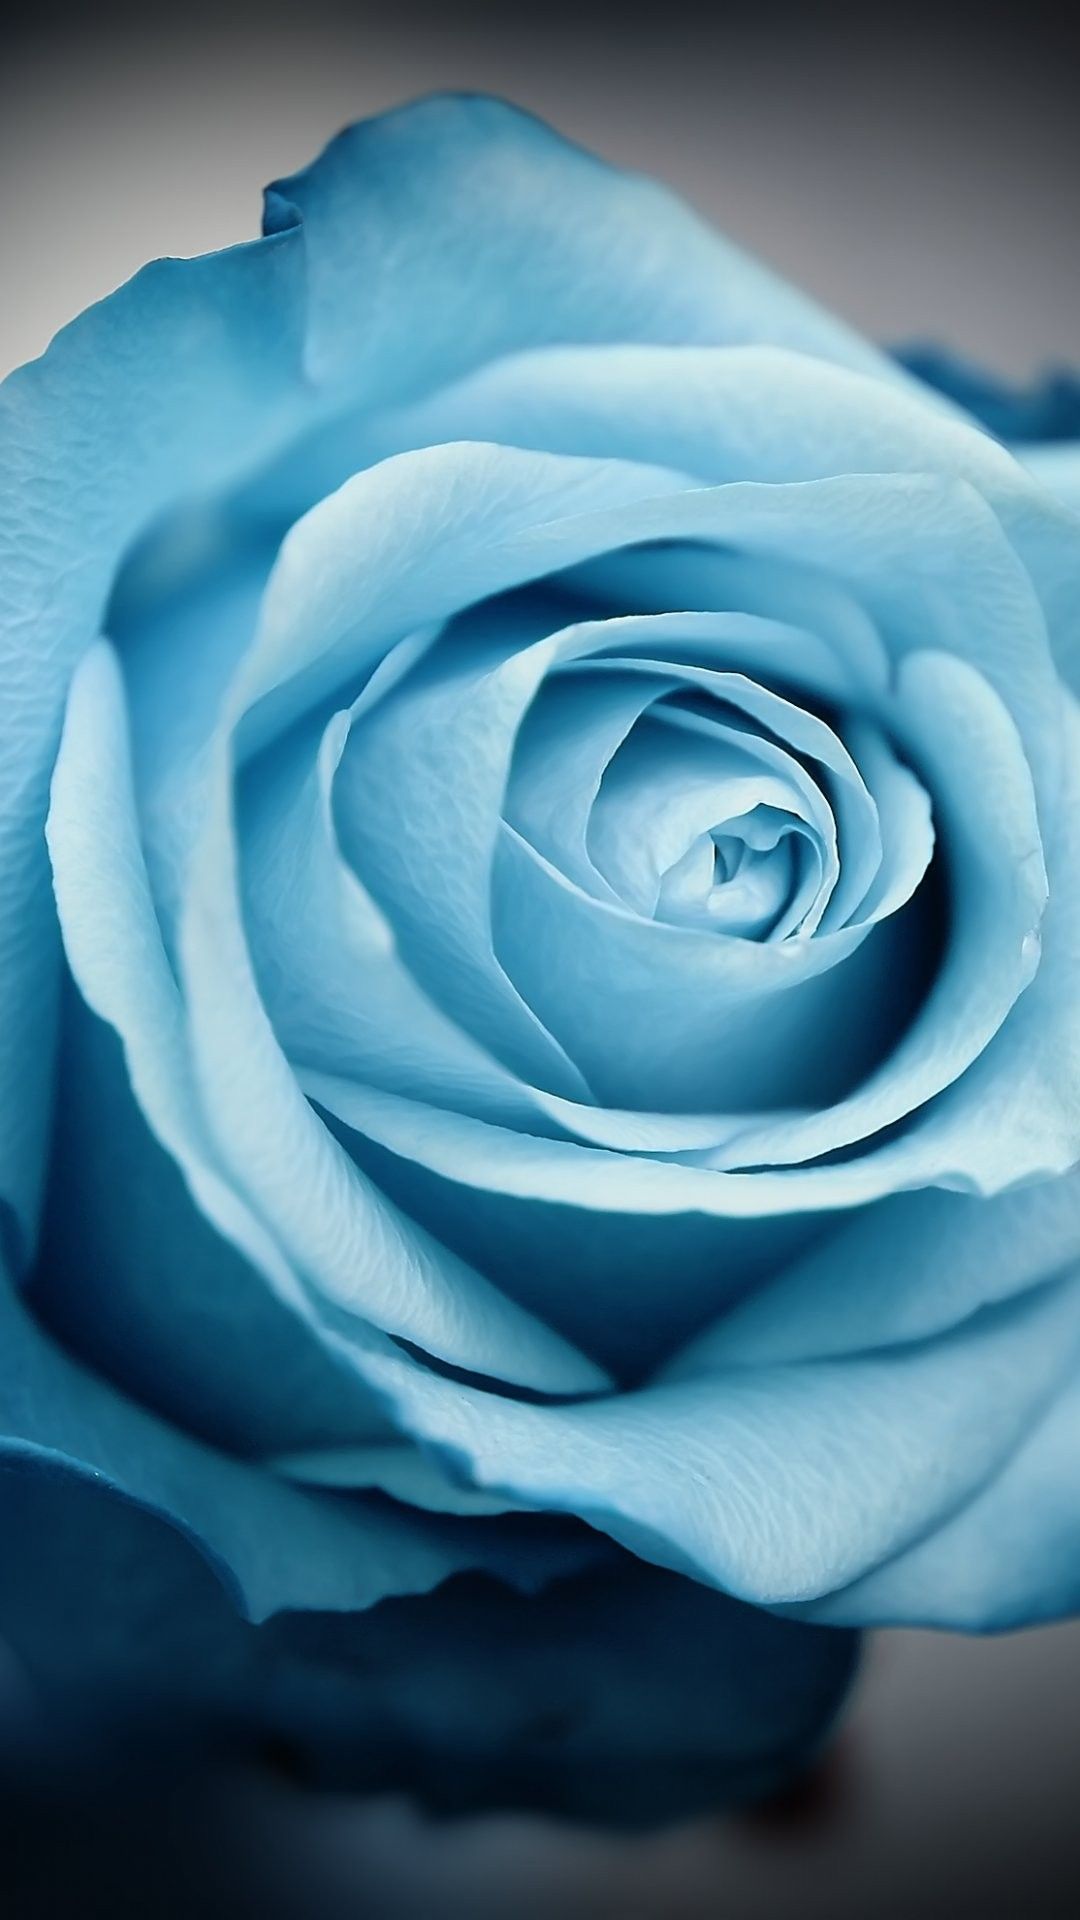 graziosi sfondi per iphone 6,rosa,blu,fiore,rose da giardino,petalo